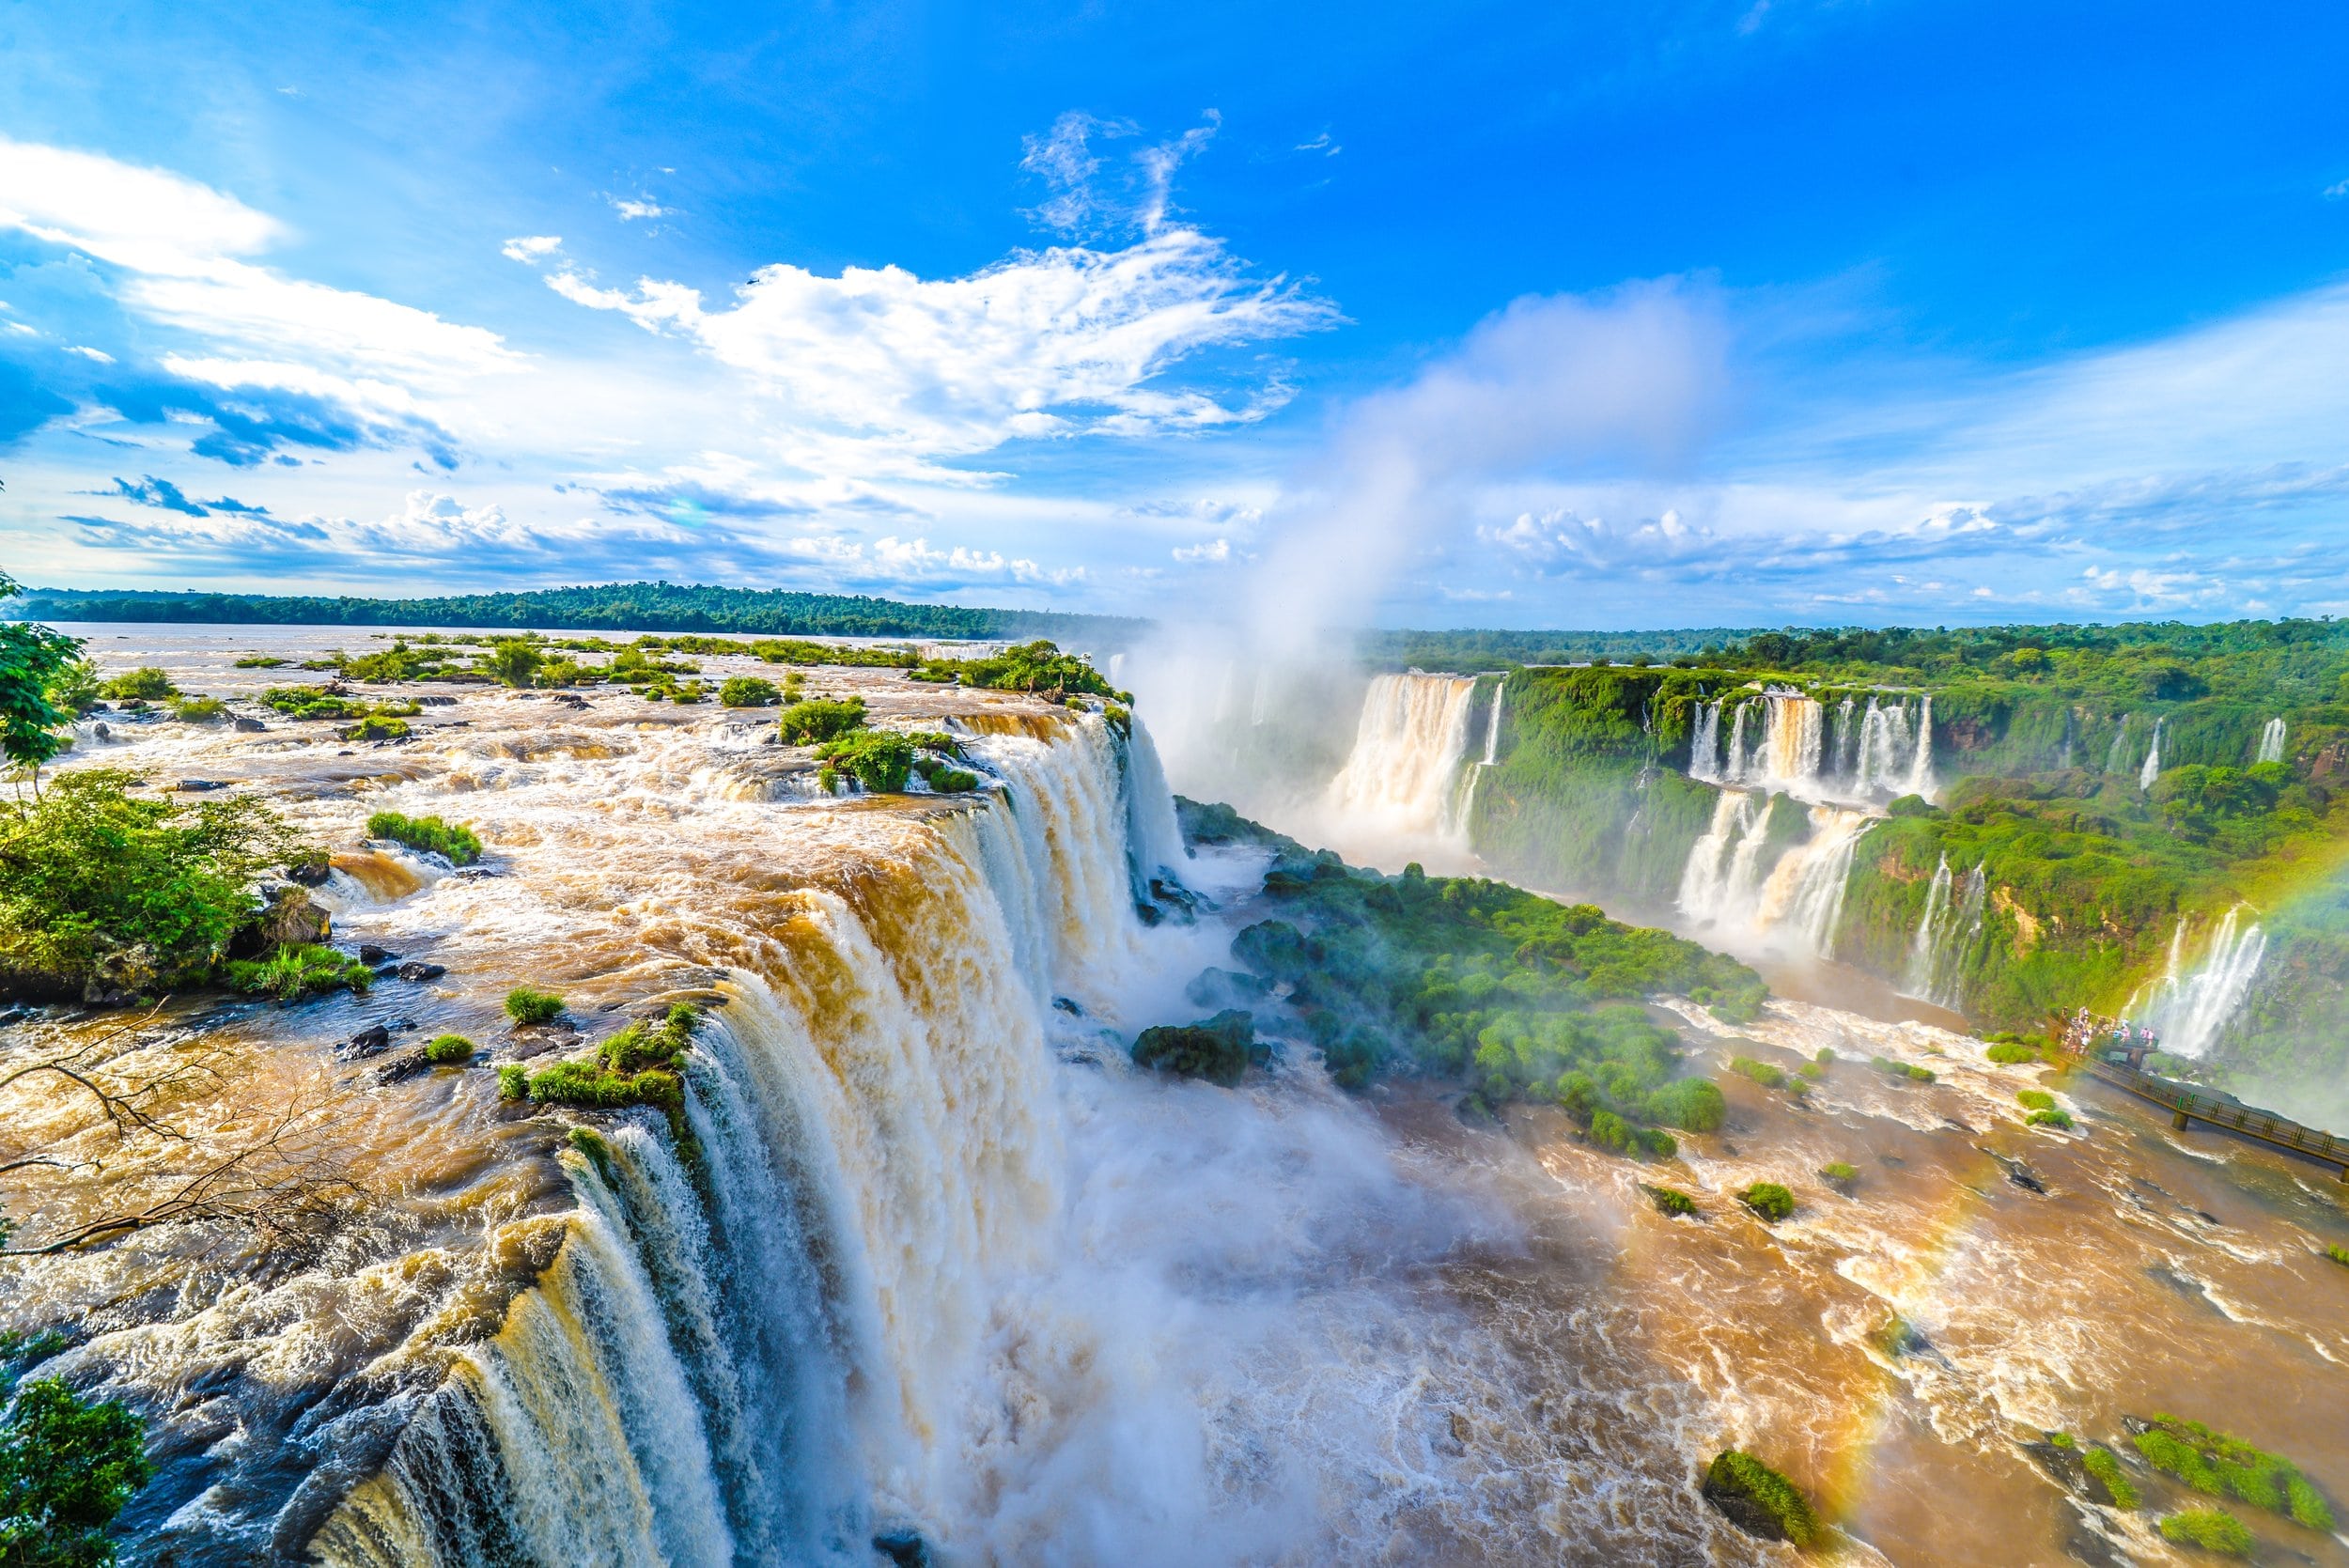  آبشار ایگوازو در برزیل